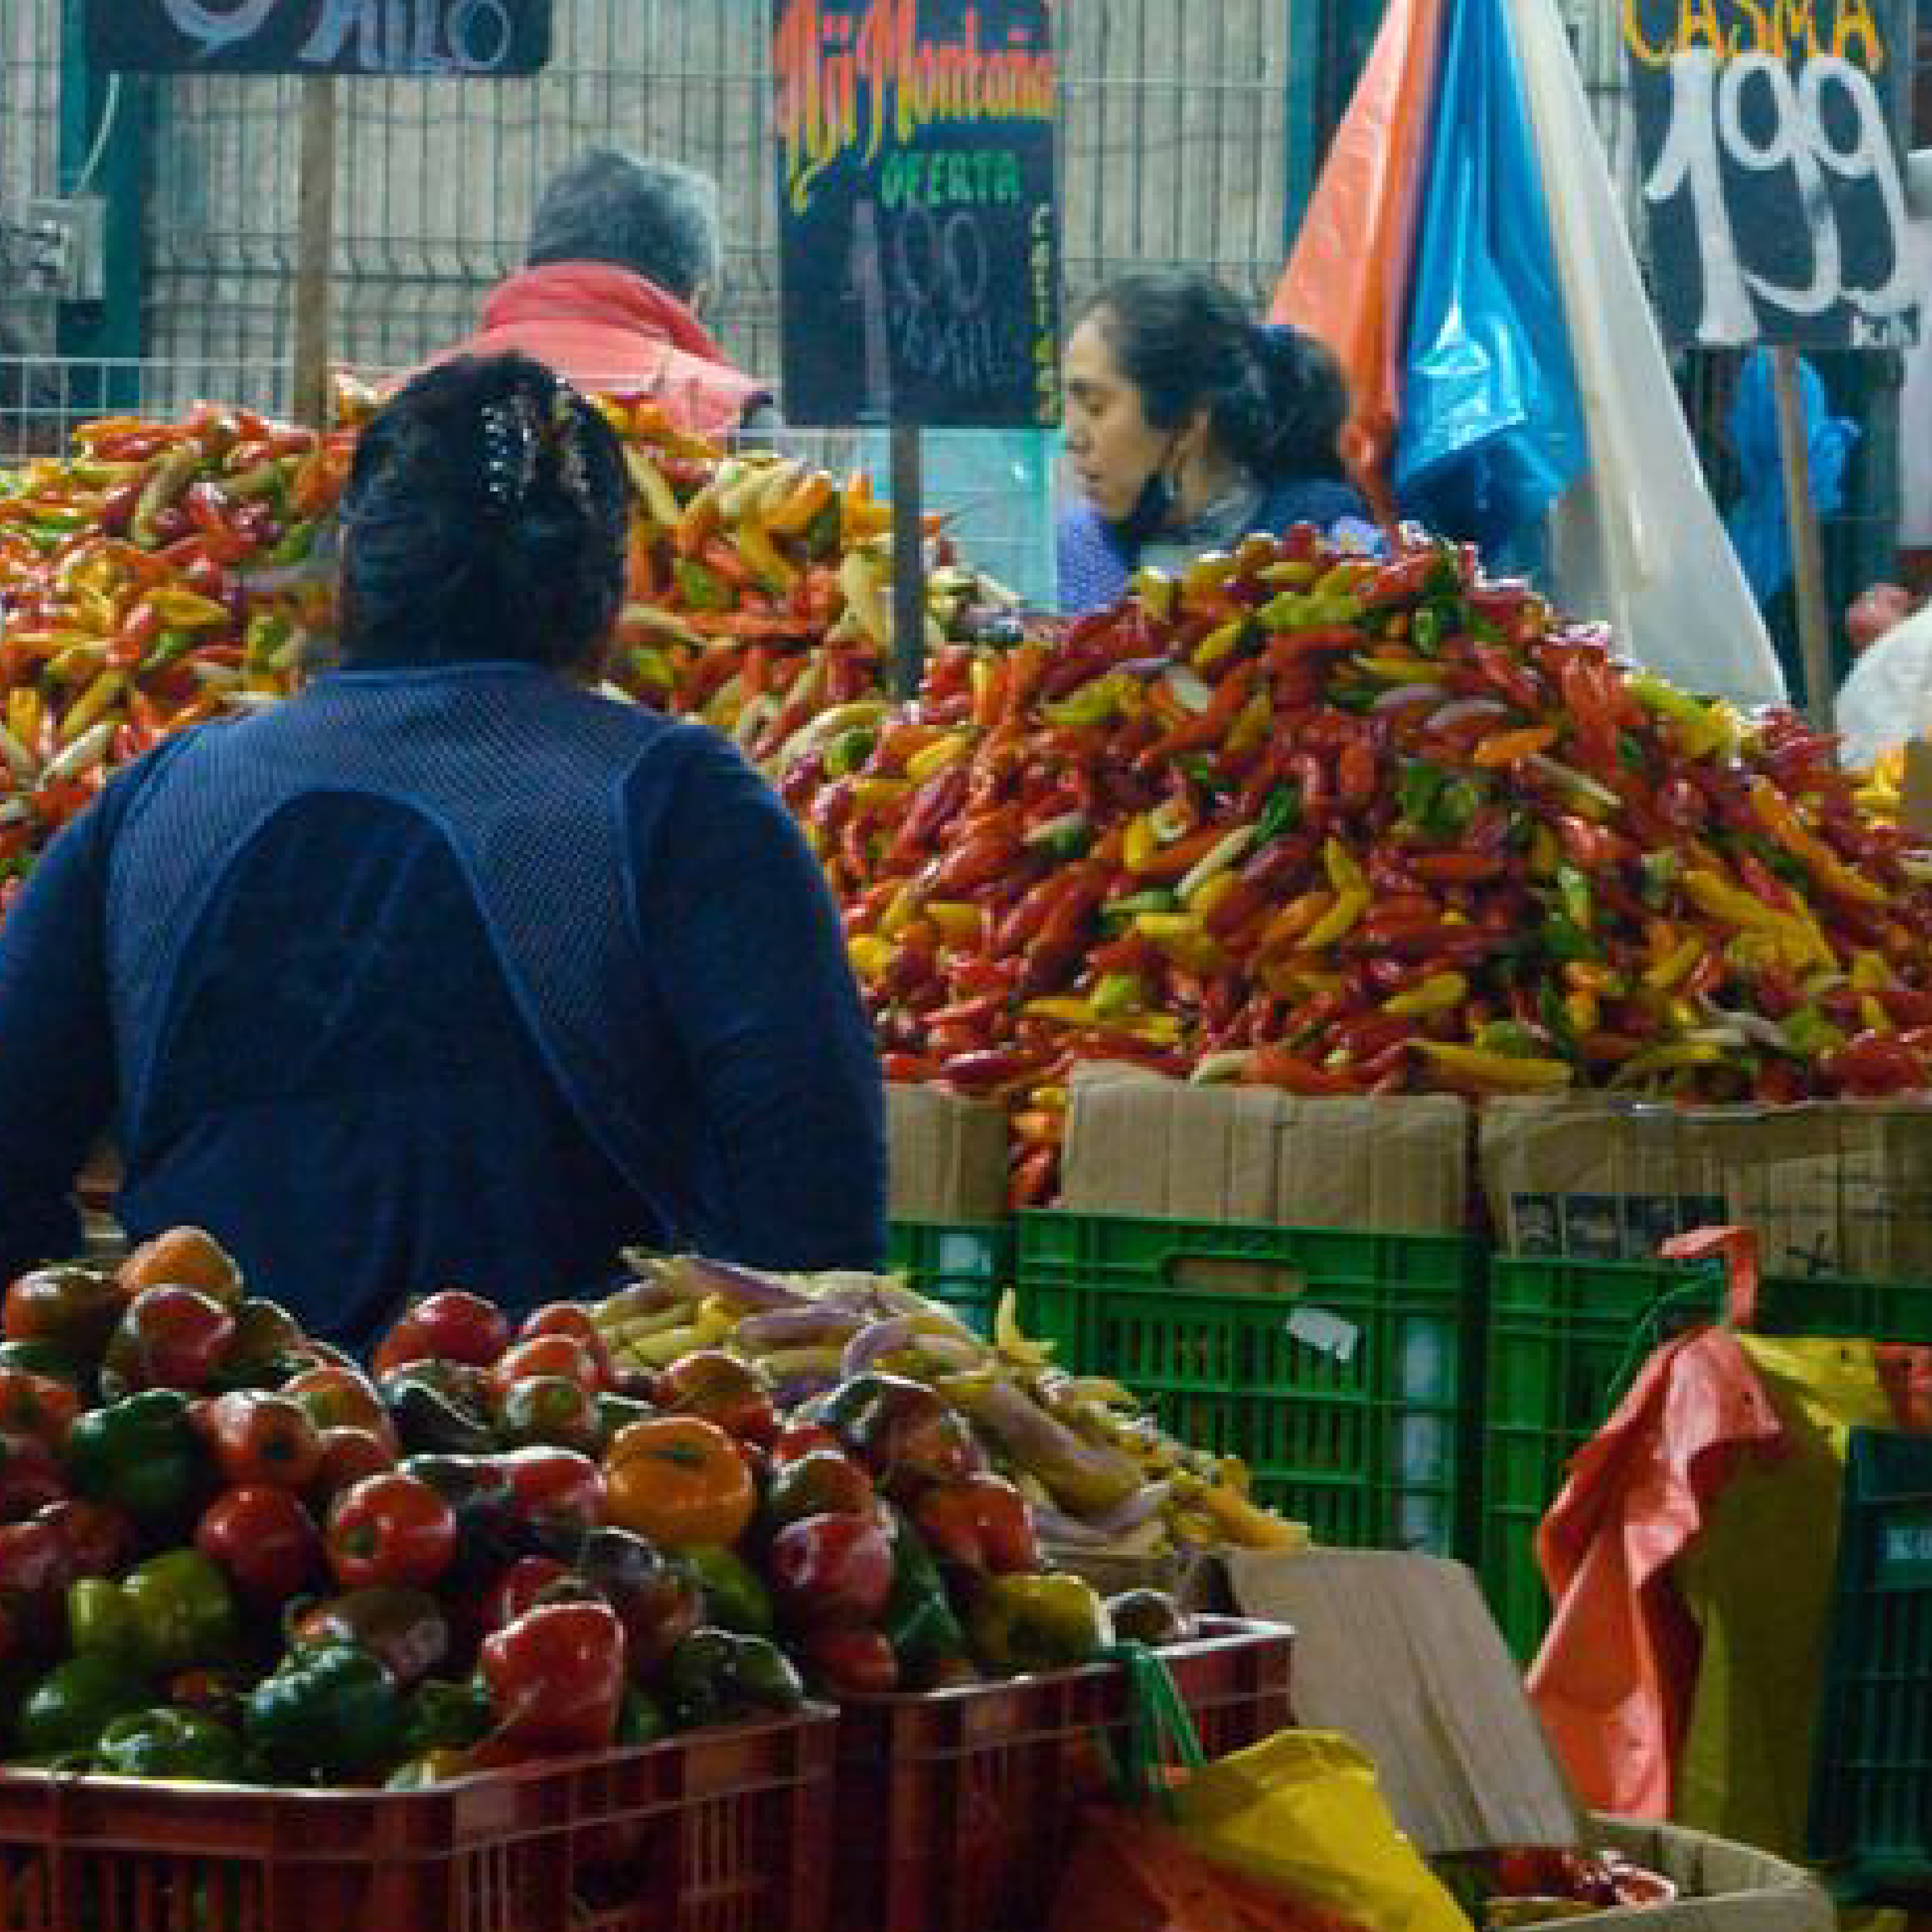 © Roberto Villanueva A Food Bank agent collects food at a wholesale market in Lima (mercado de mayoristas), Peru.